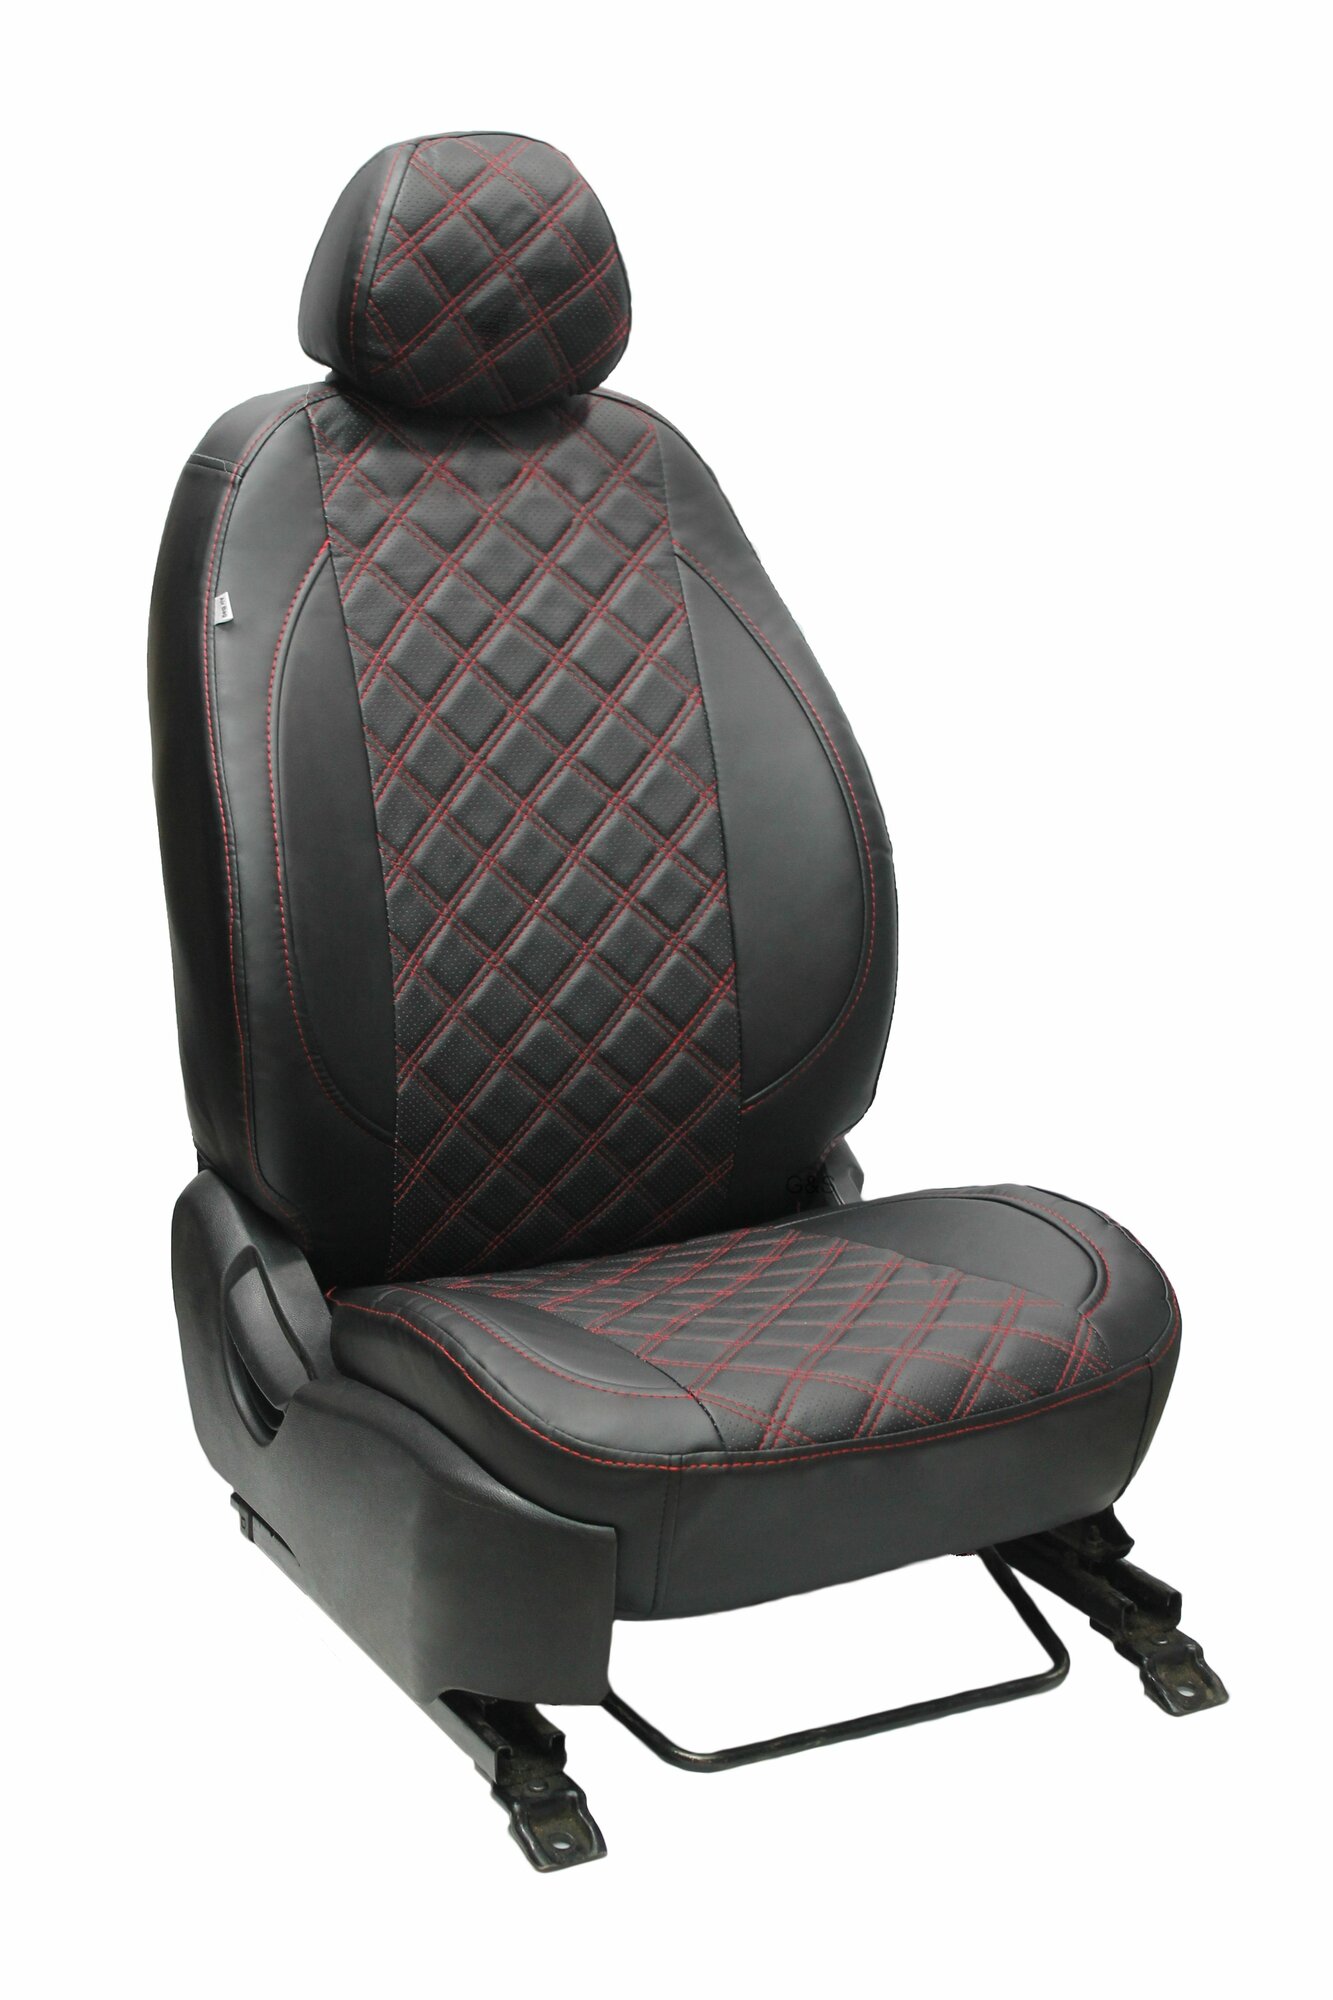 Чехлы для автомобильных сидений комплект Premium на KIA OPTIMA (2016-н. в.) седан авточехлы модельные экокожа черный ромб красная нить (Кия Оптима)